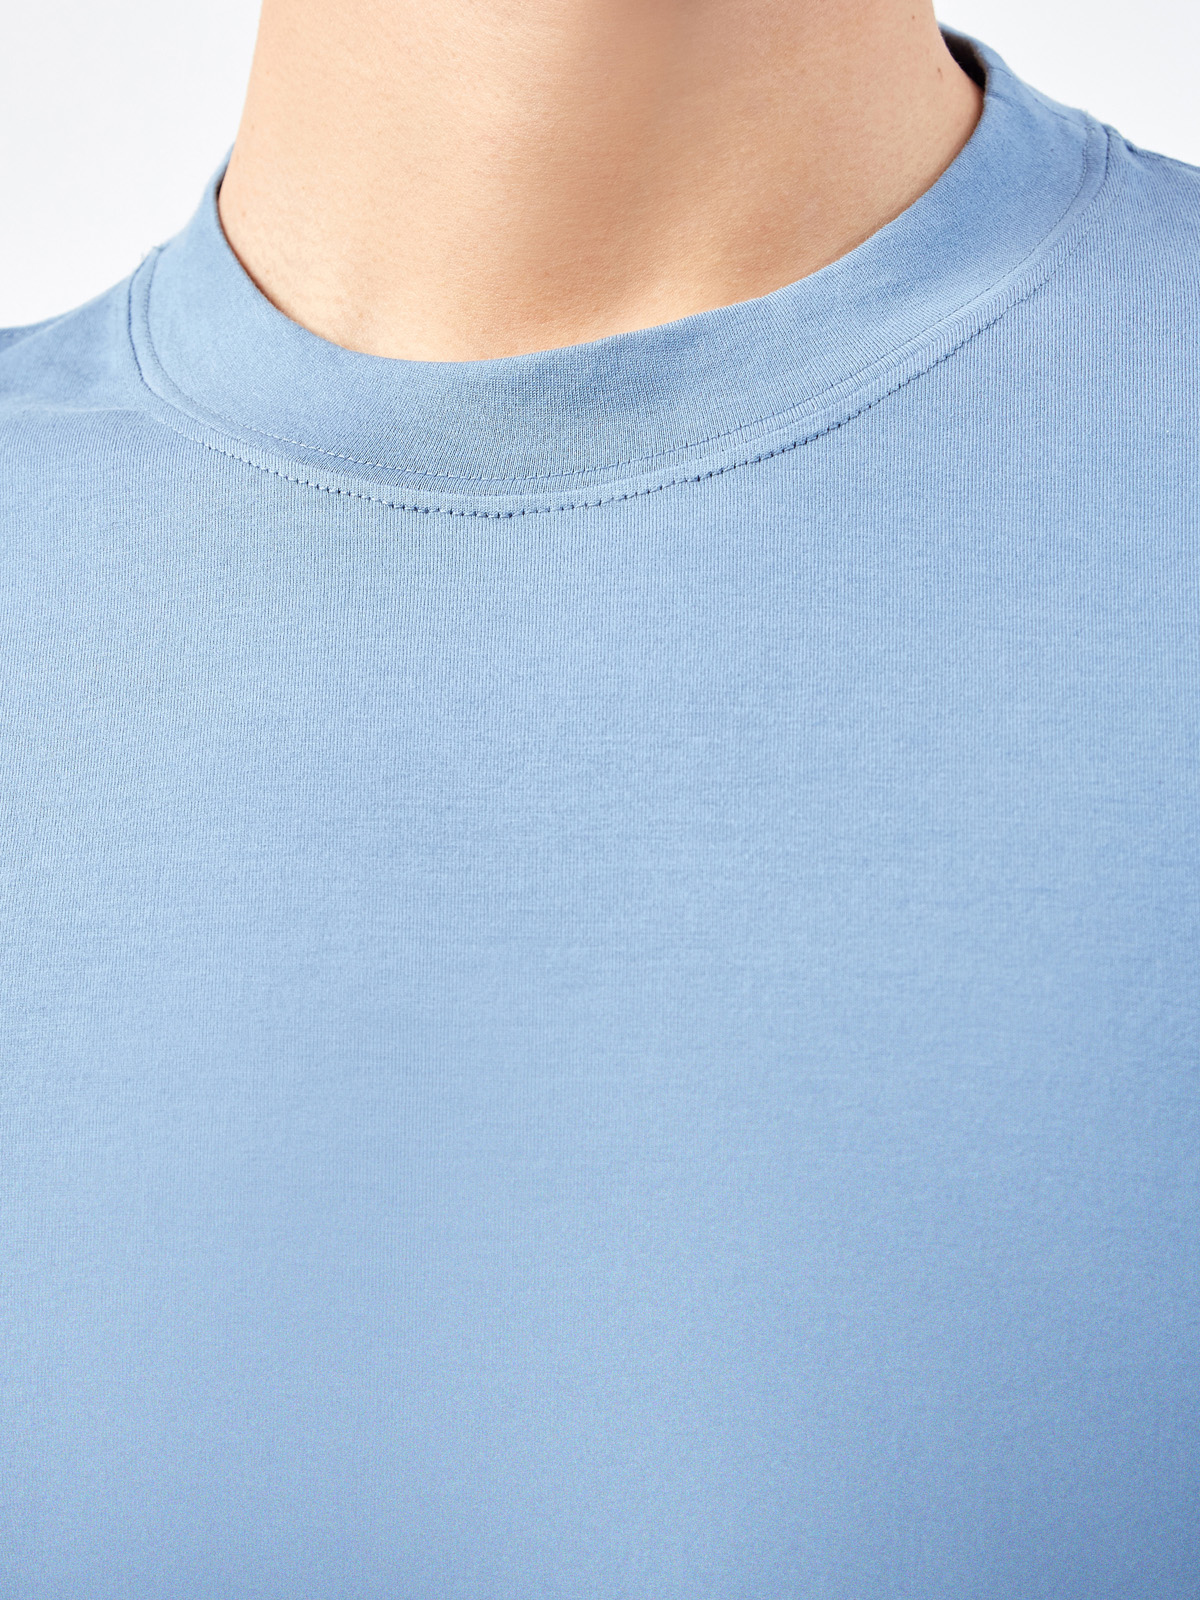 Базовая мужская футболка из гладкого джерси BRUNELLO CUCINELLI, цвет голубой, размер 52;50 - фото 5